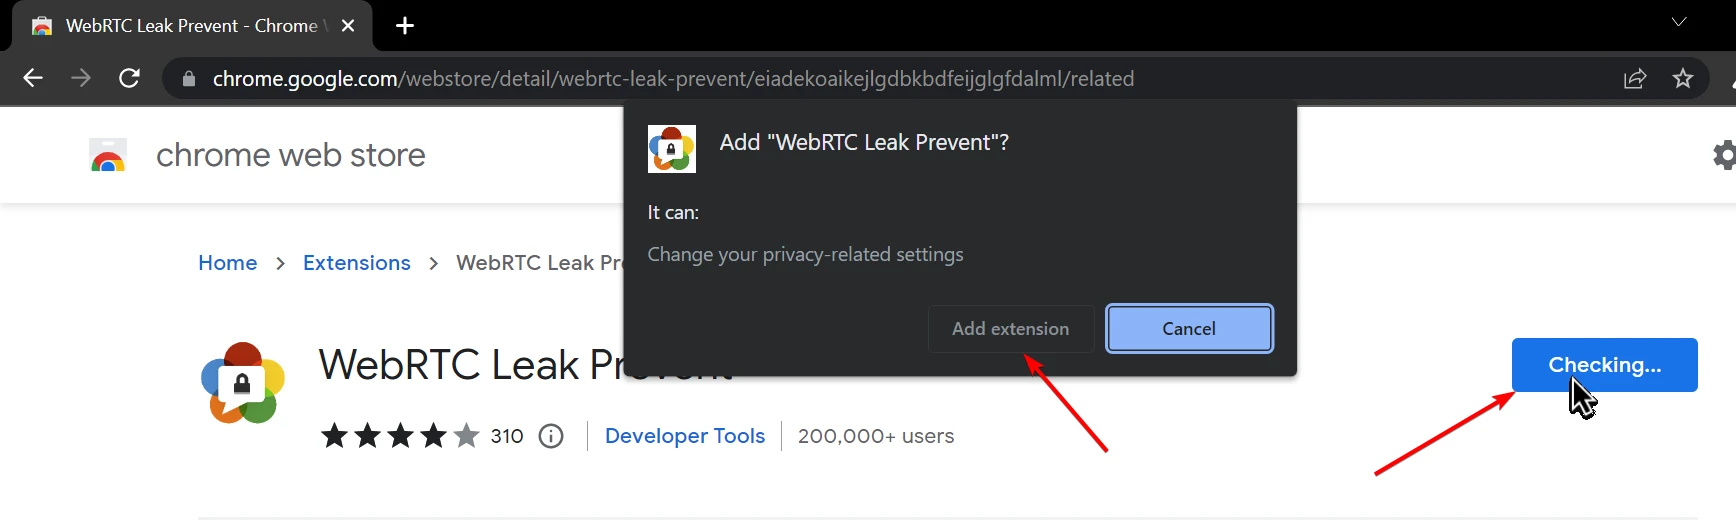 WebRTC leak prevent